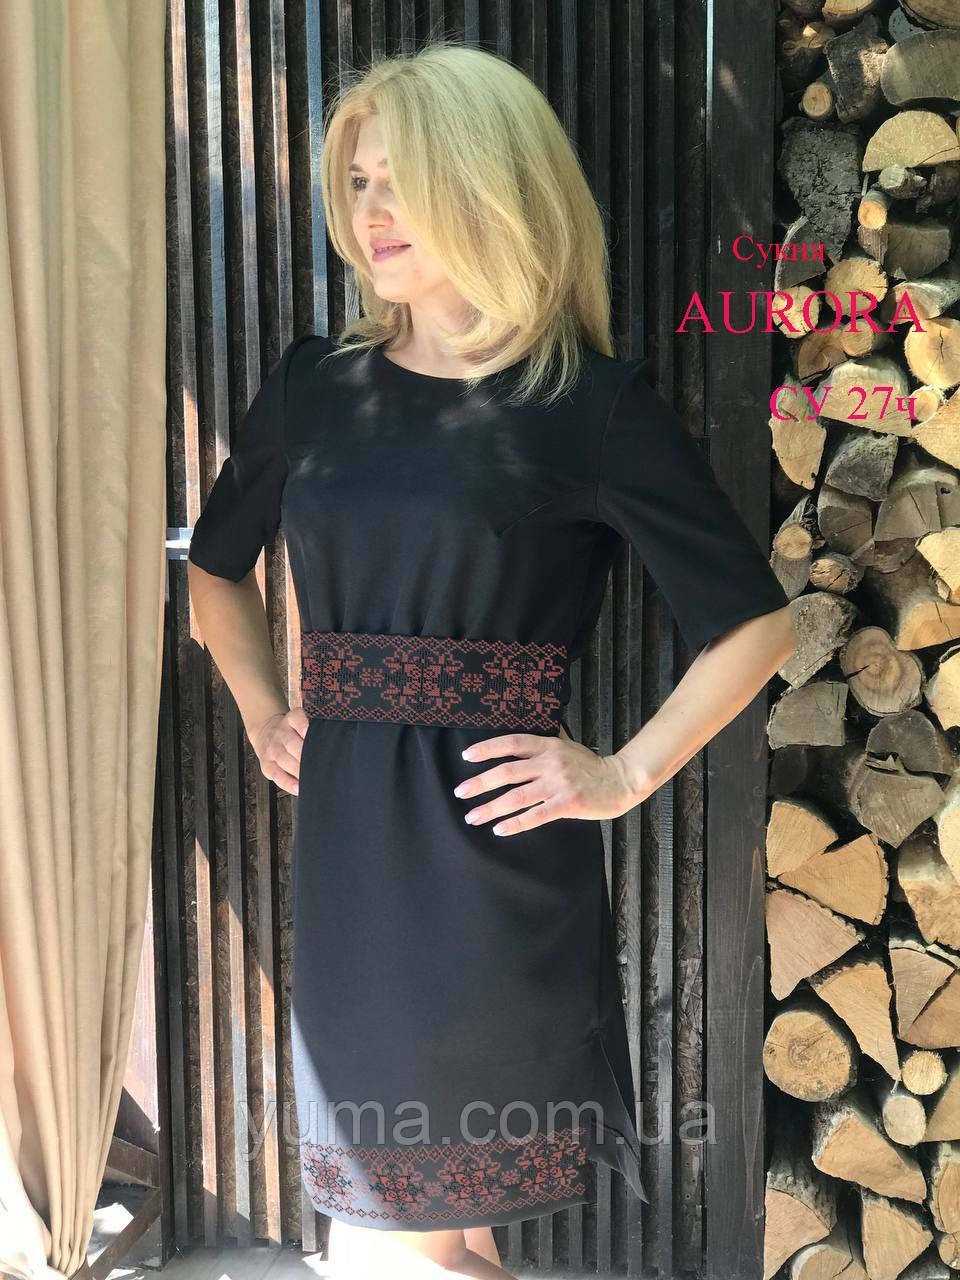 Пошита жіноча сукня для вишивання AURORA СА27Ч